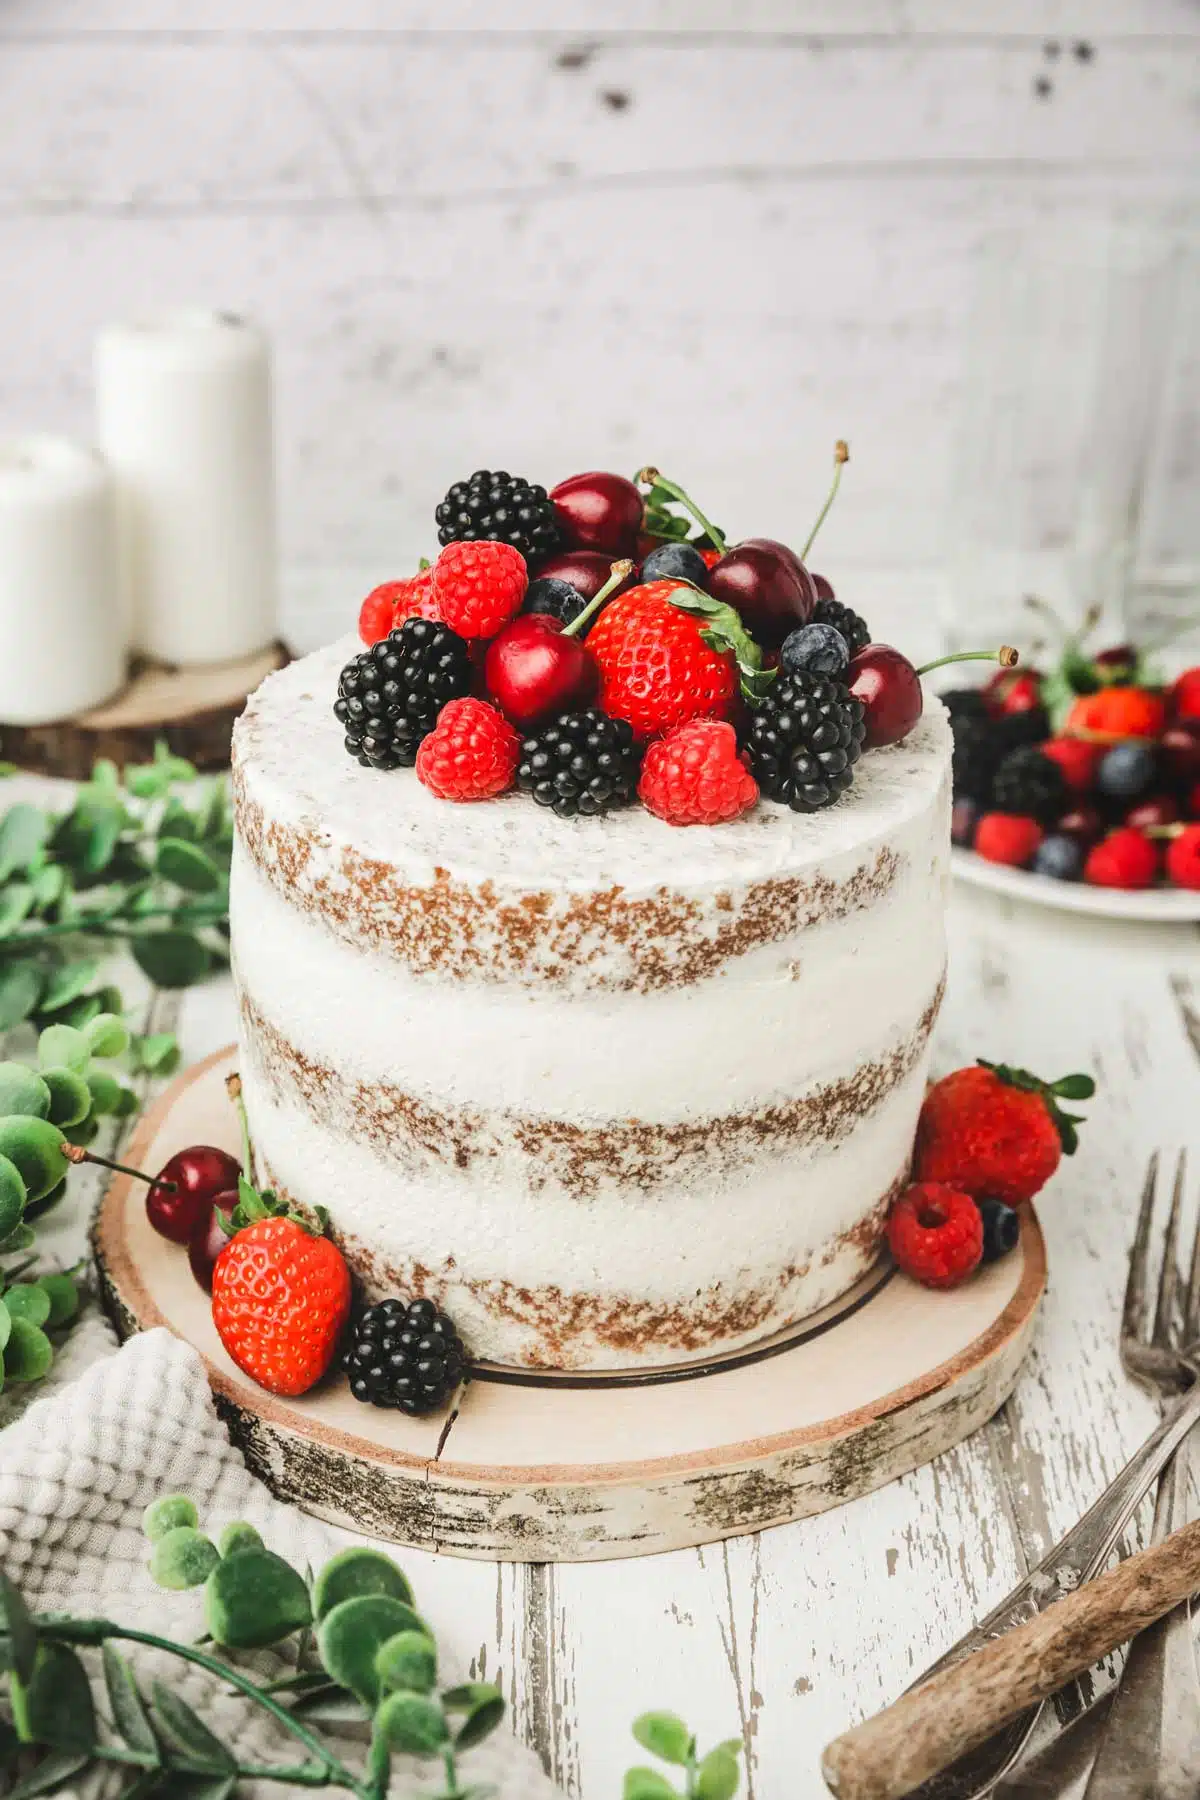 Layer cake vanille-fruits rouges - La gourmandise est un joli défaut